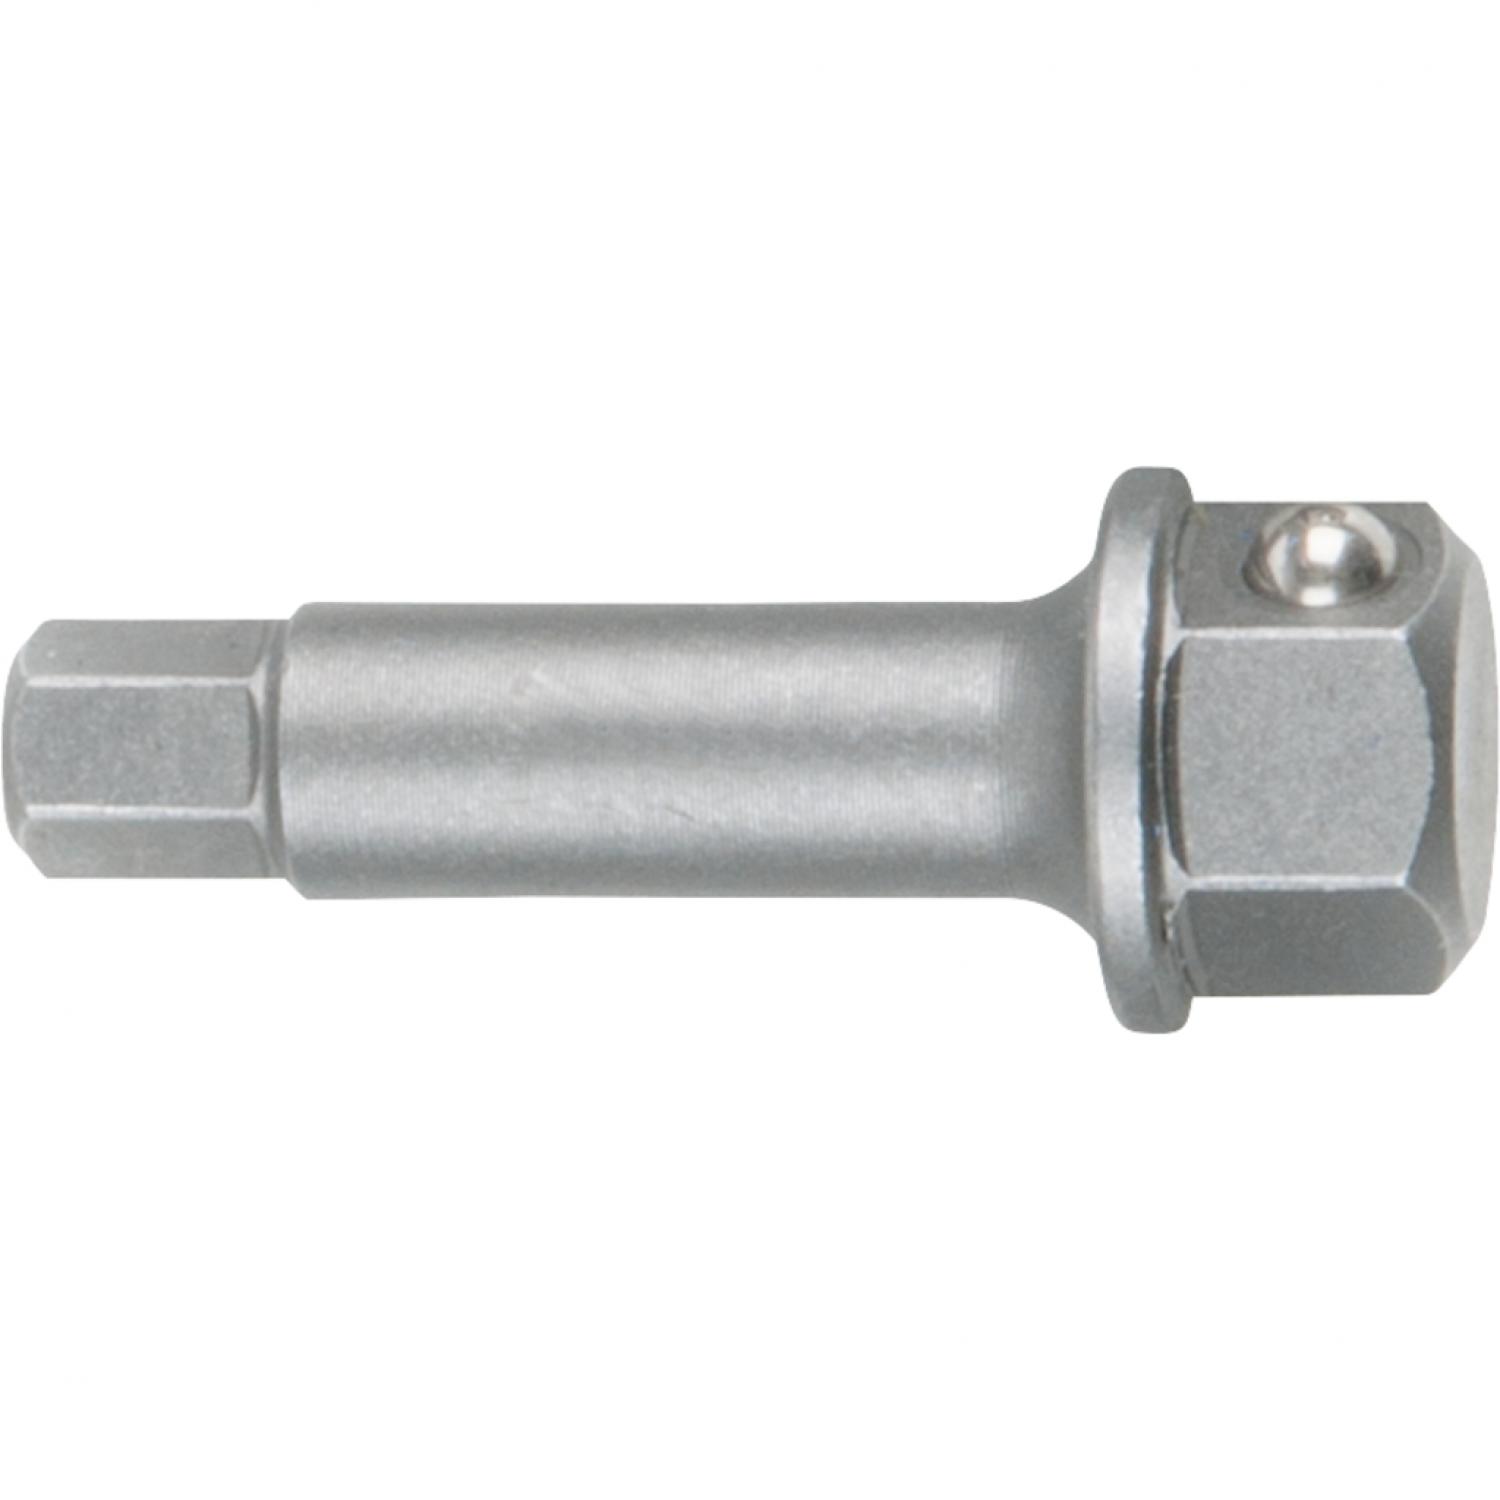 Головка для торцового ключа с внутренним шестигранником, 9 мм